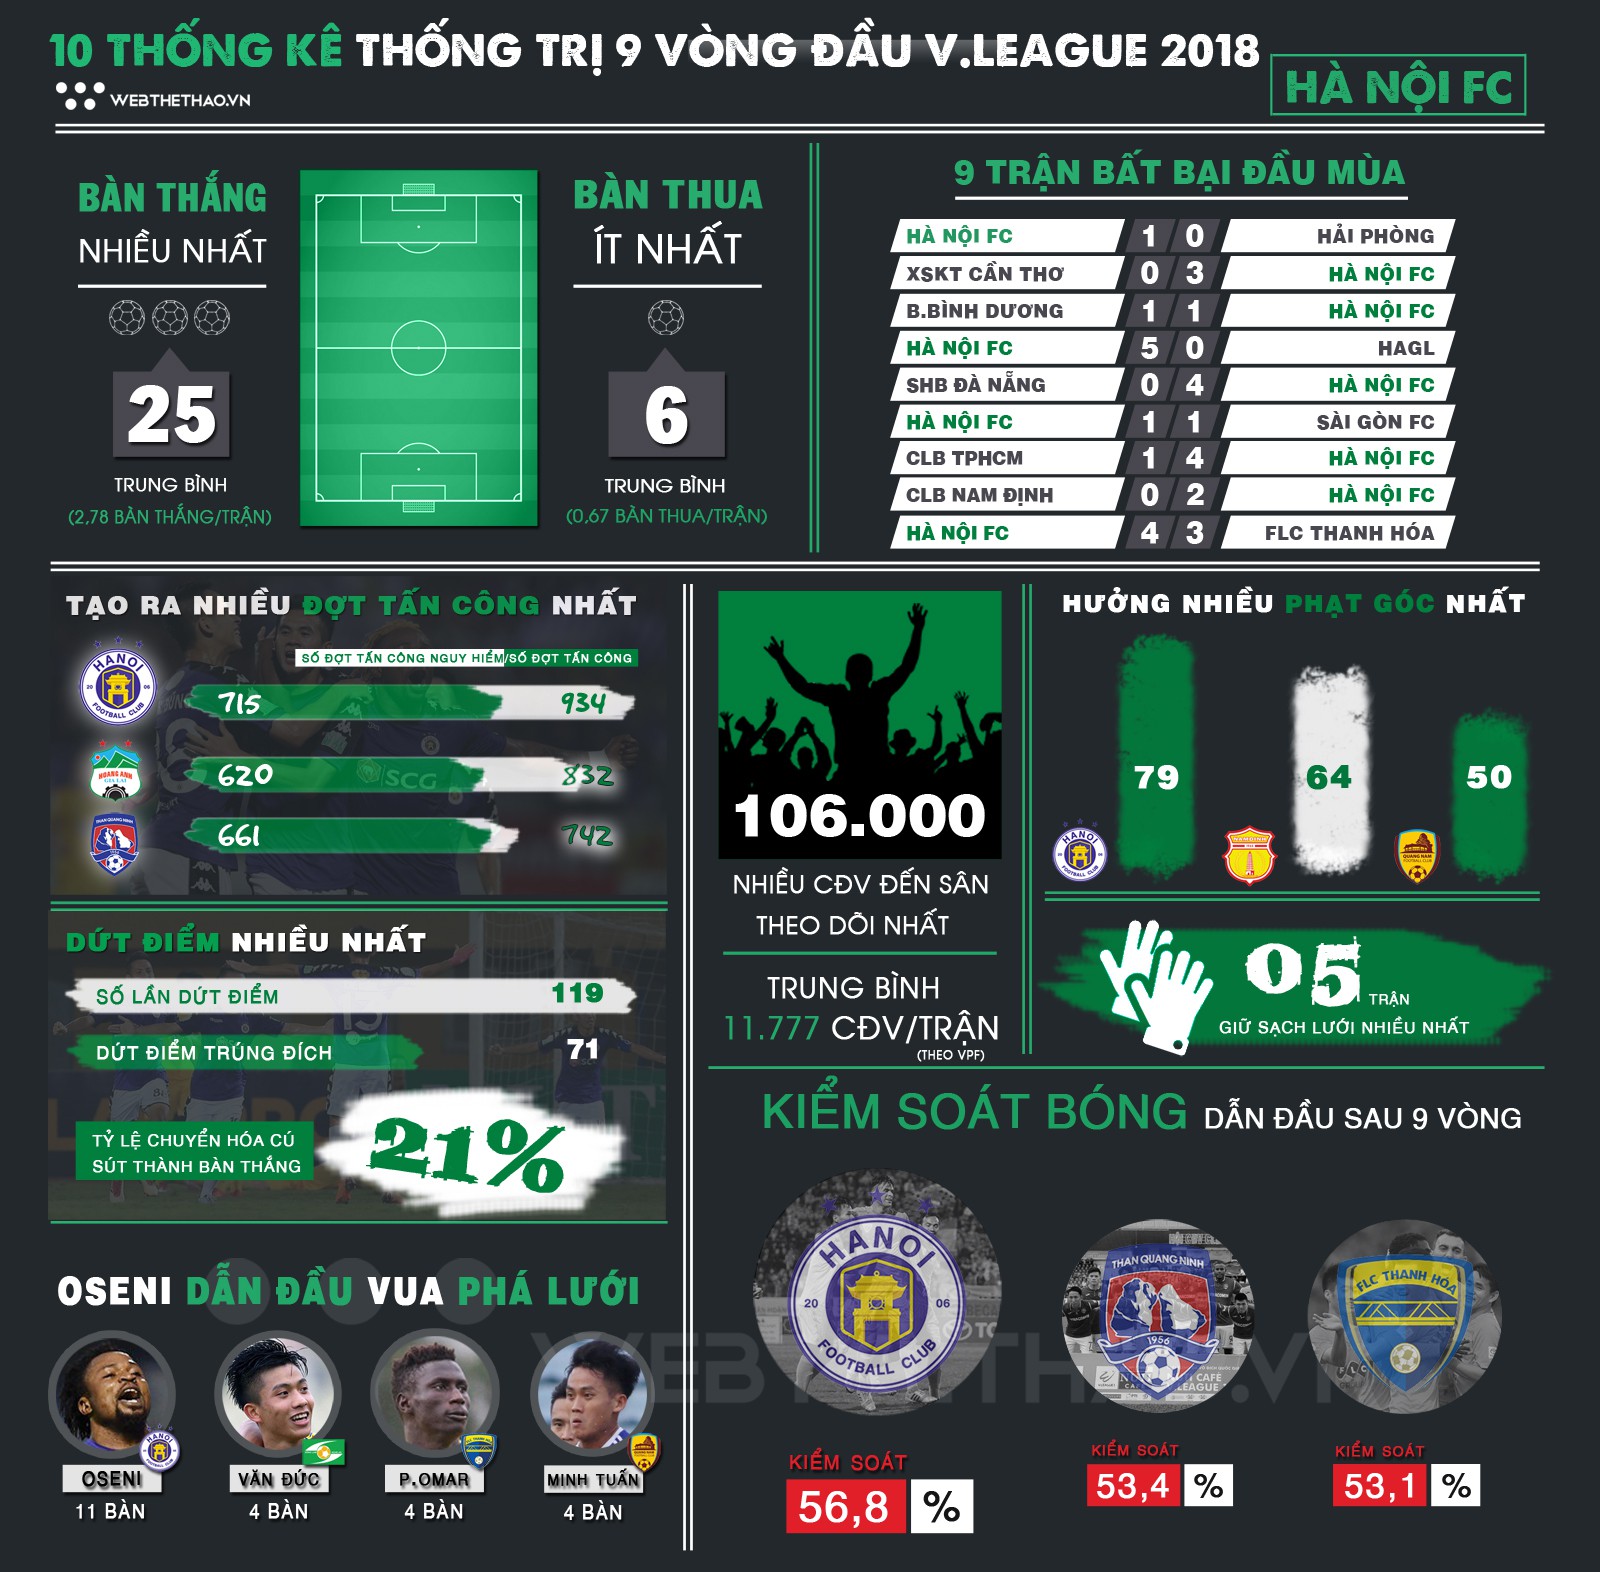 Infographic: 10 thống kê thống trị 9 vòng đầu V.League 2018 của Hà Nội FC - Ảnh 1.